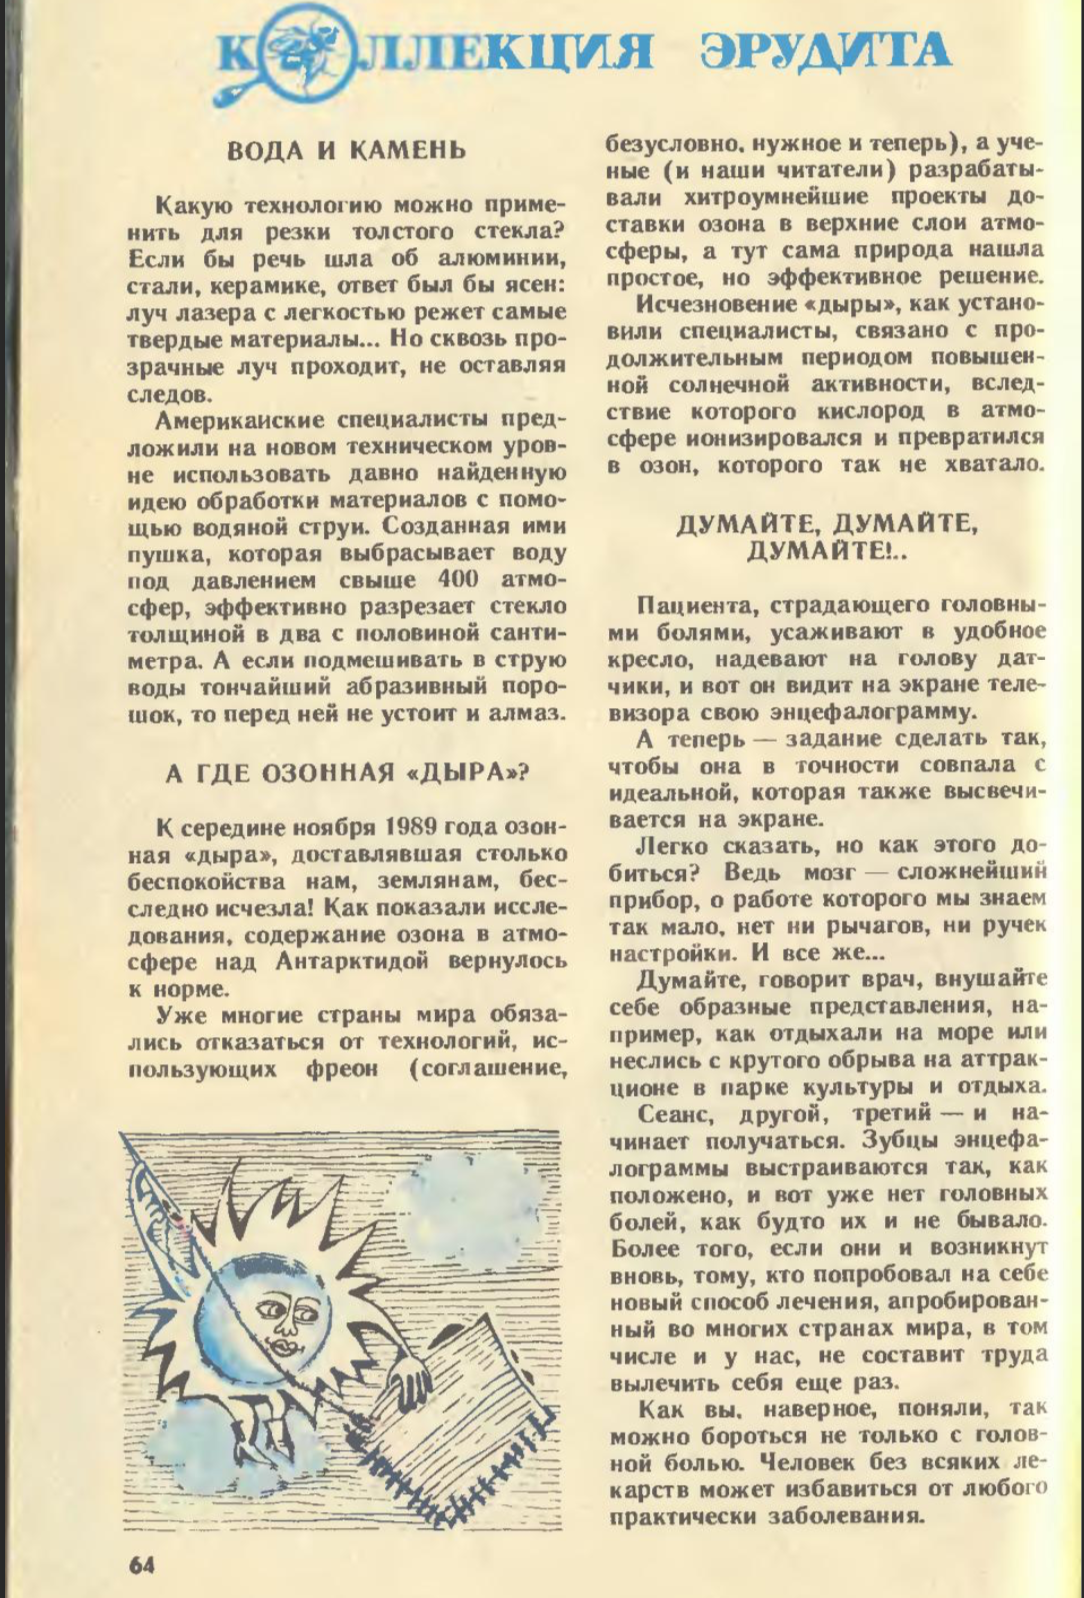 Заметка об озоновой дыре в журнале “Юный Техник”, № 4, апрель 1990 года